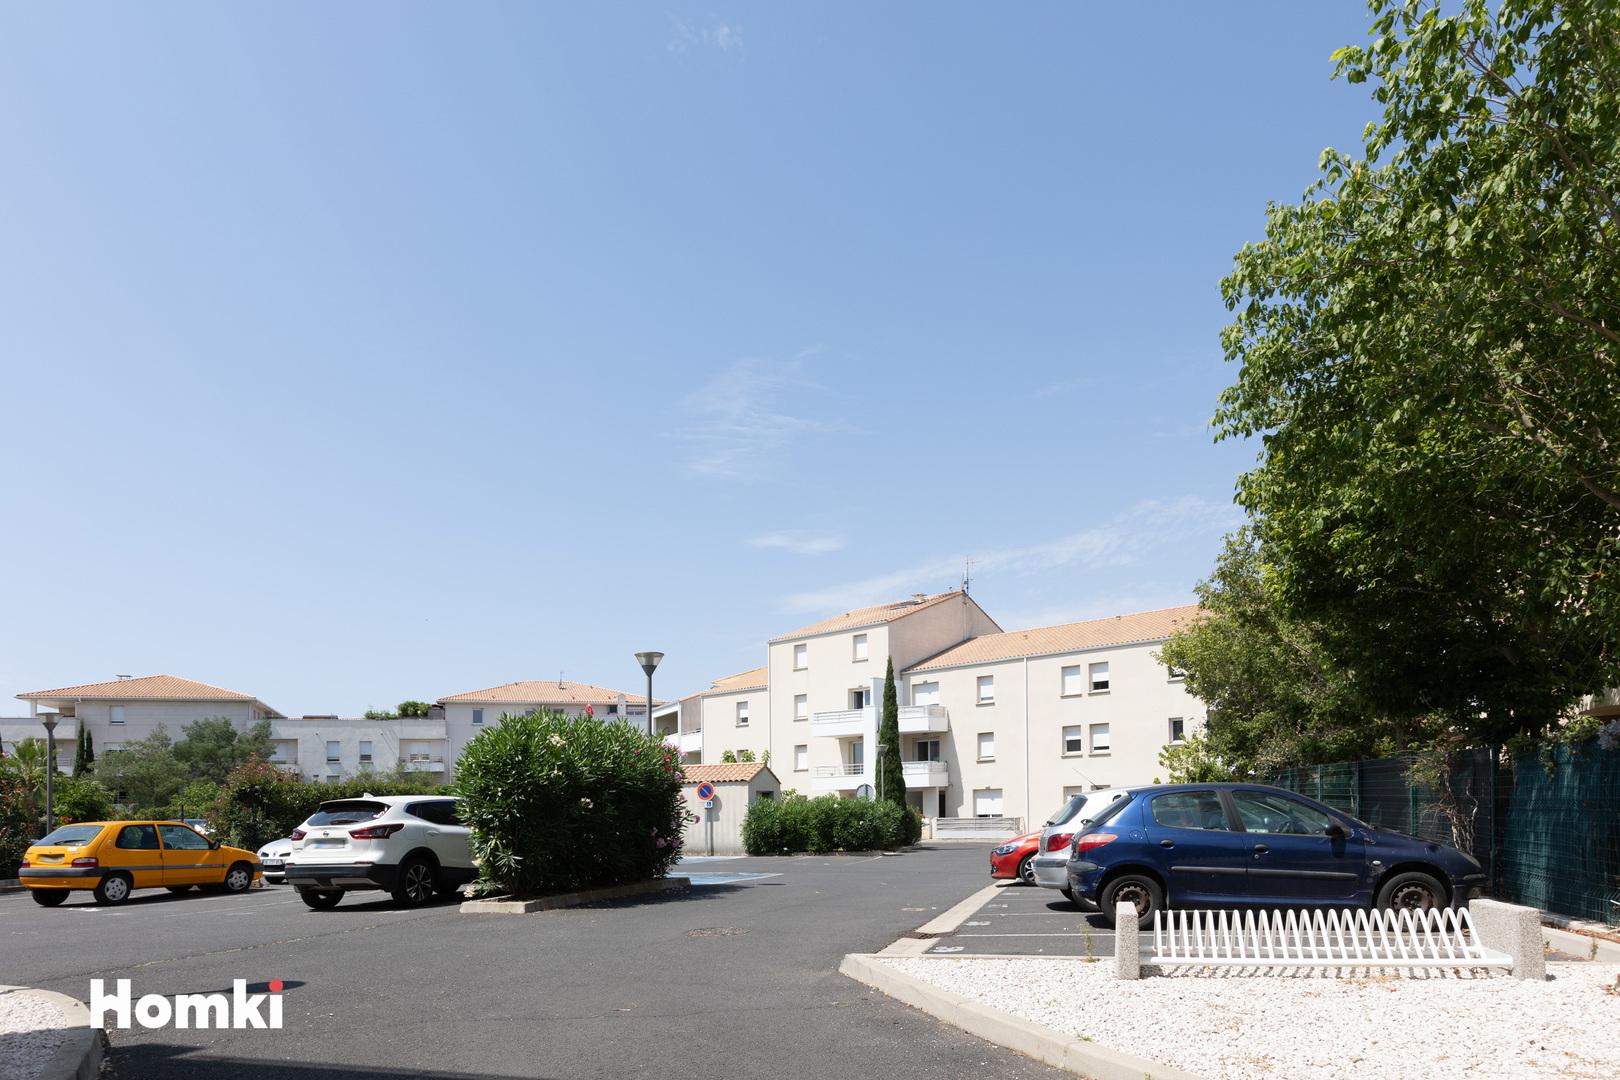 Homki - Vente Appartement  de 64.0 m² à Agde 34300